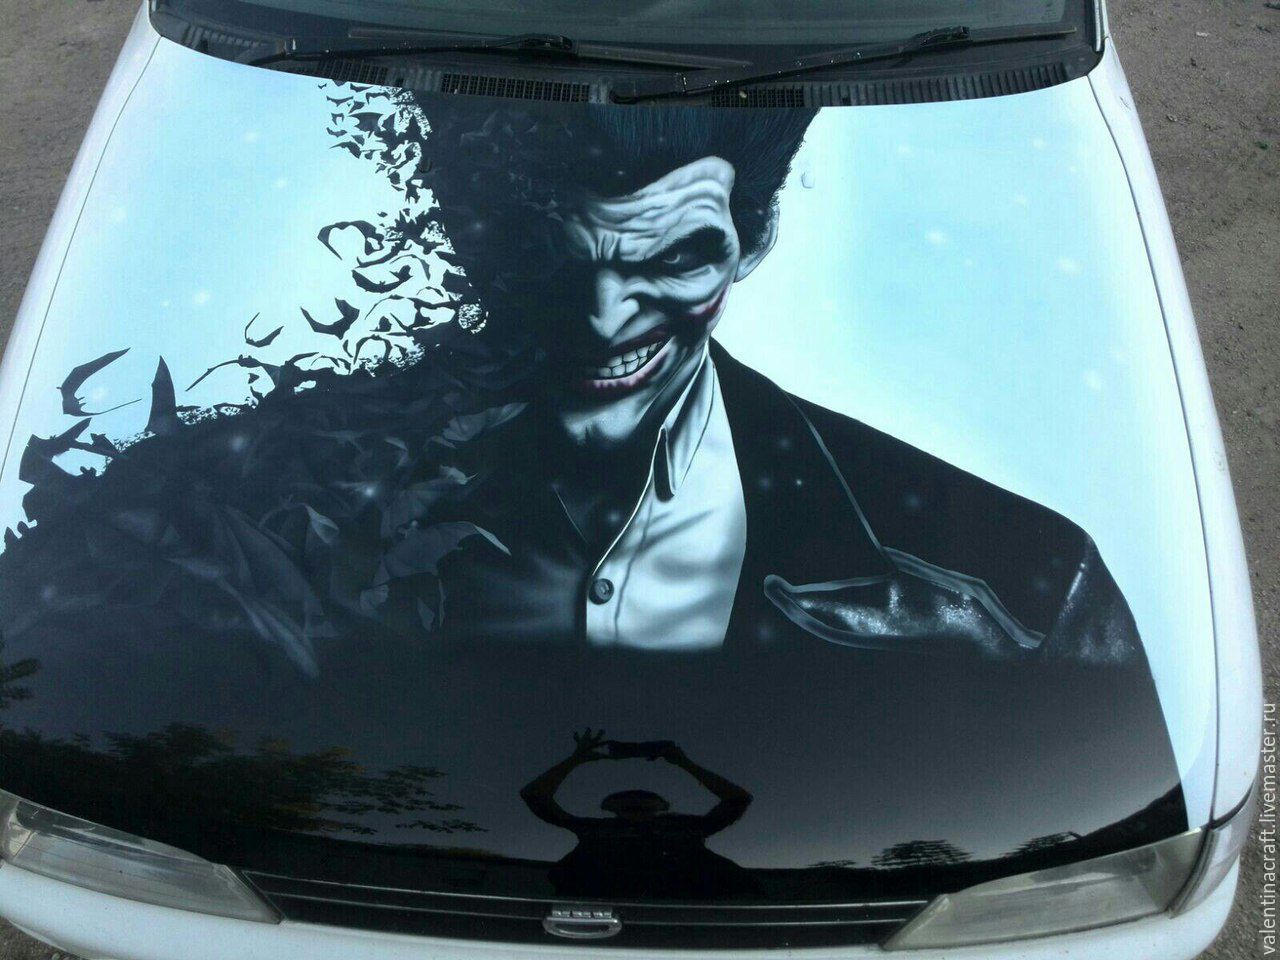 Аэрография на капот автомобиля Джокер